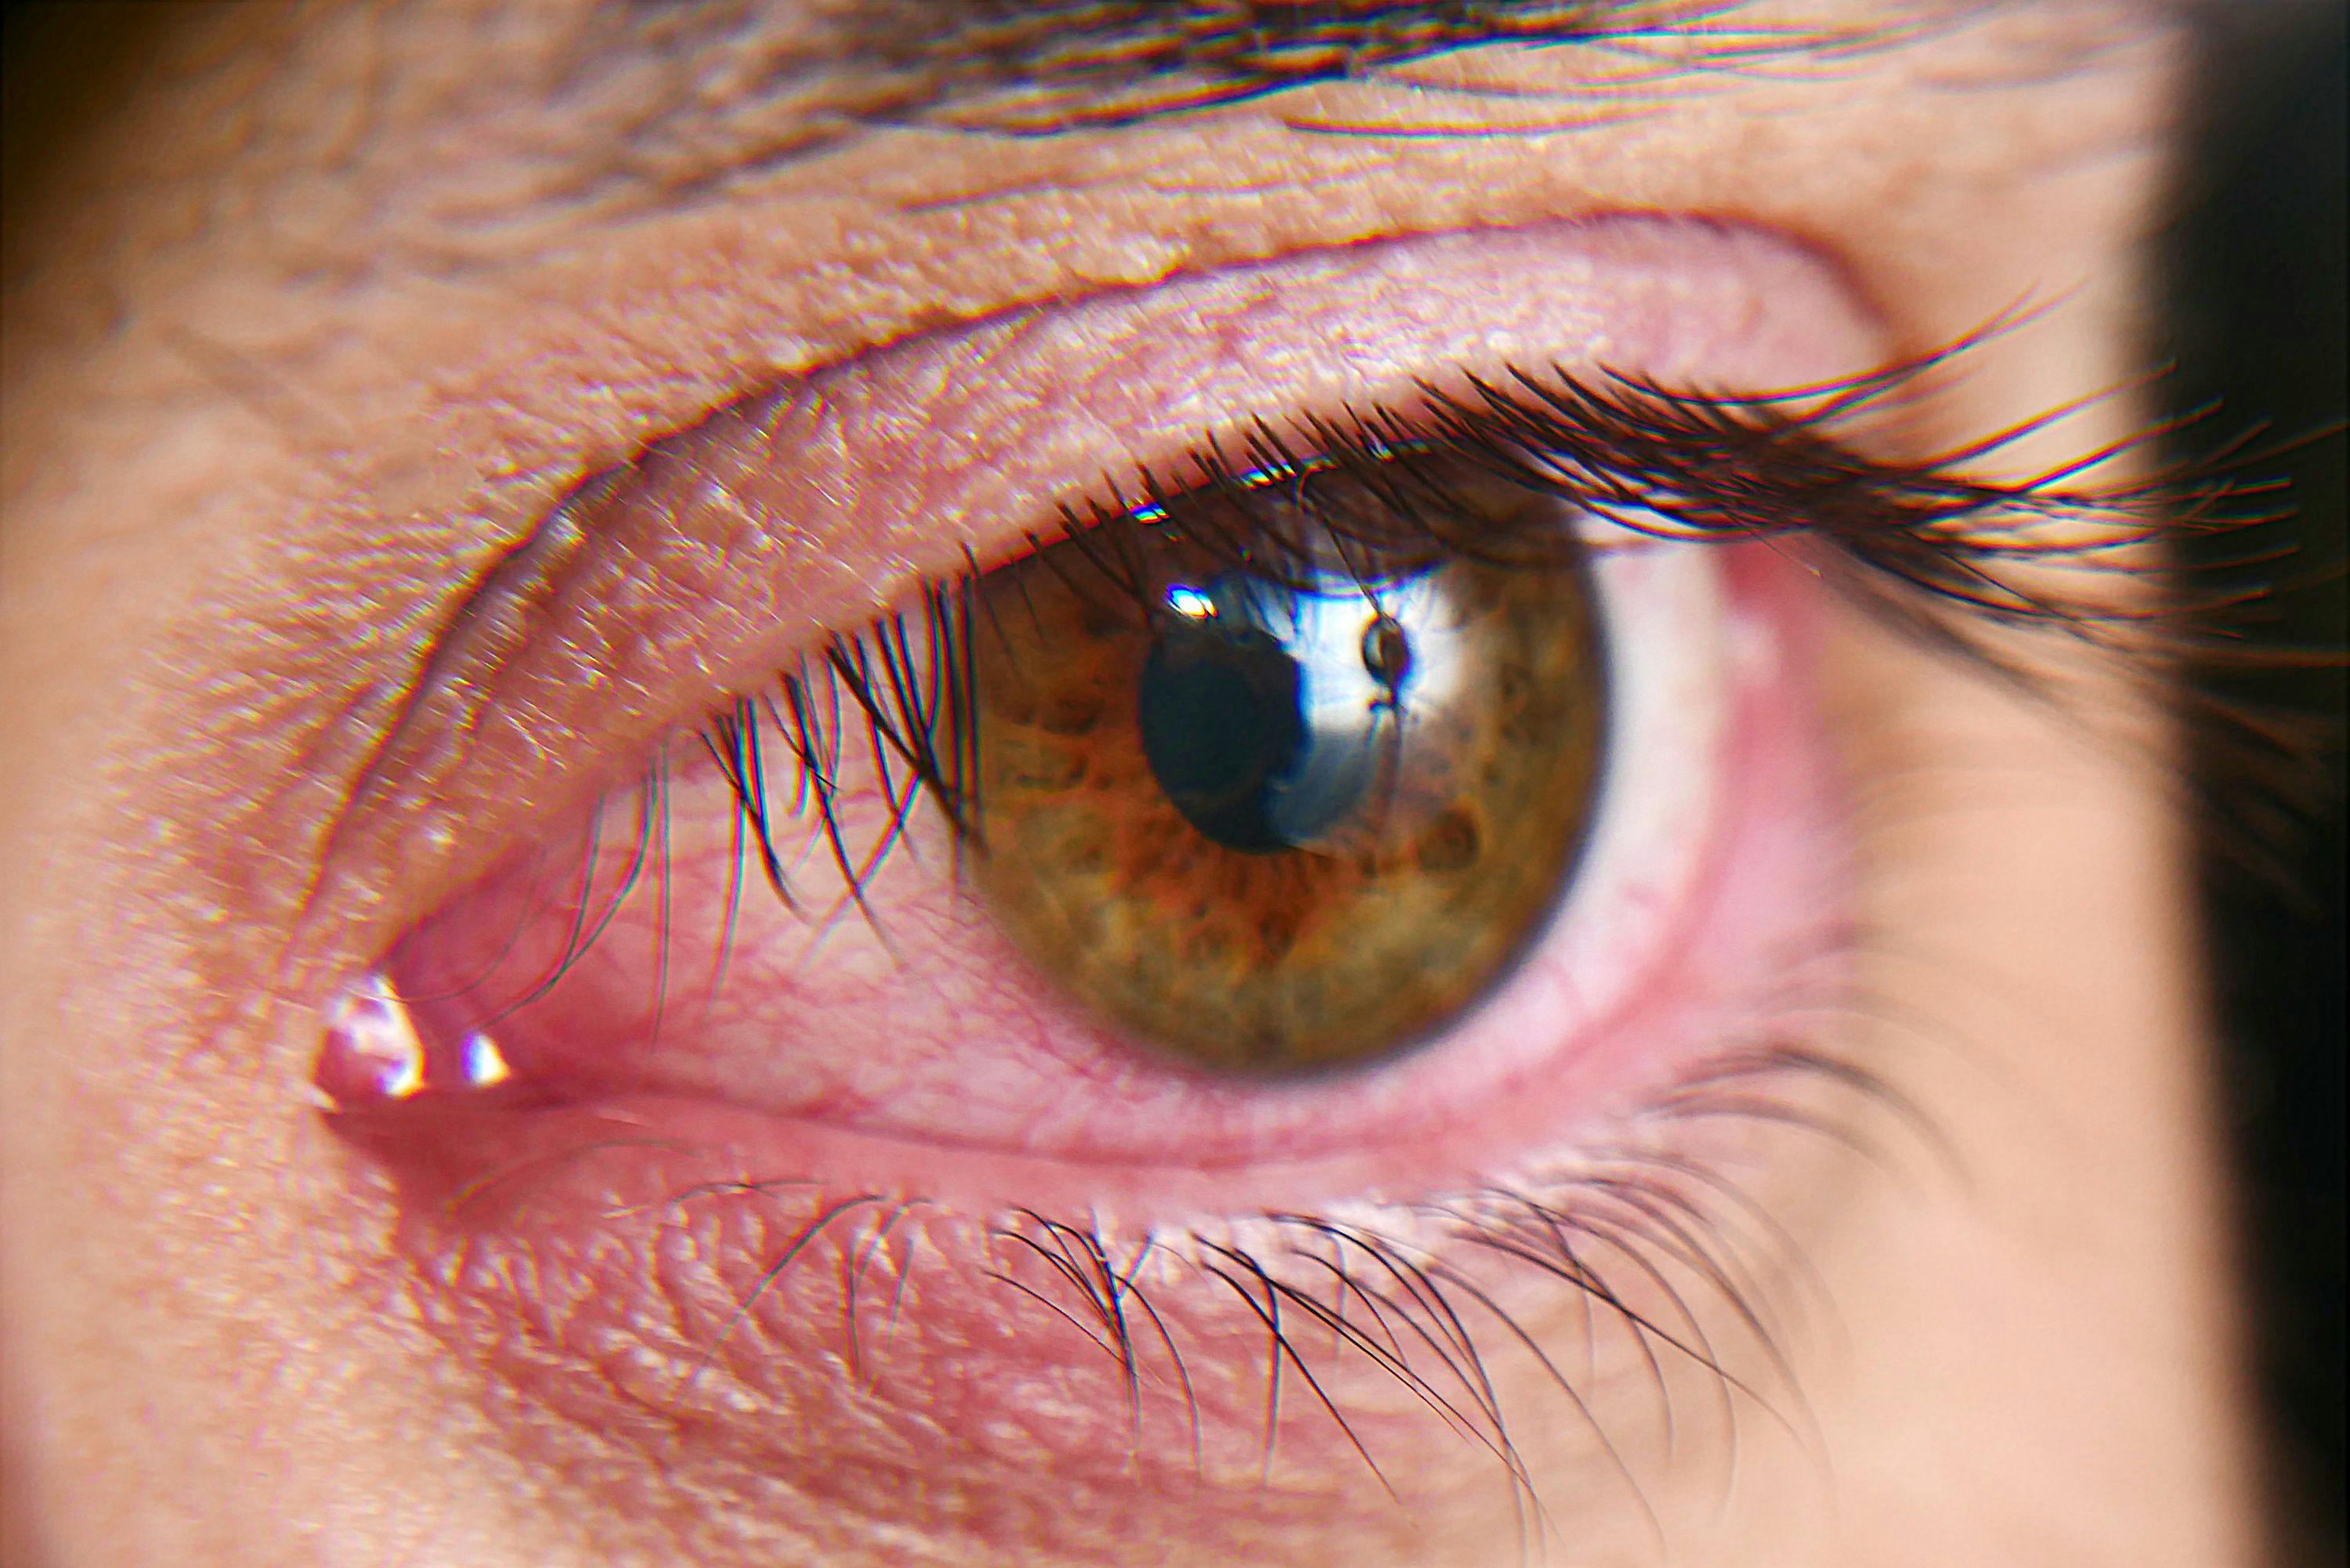 Red squirrel eyes, macro photo. Conjunctivitis, eye disease - Image credit: Kryuchka Yaroslav | stock.adobe 